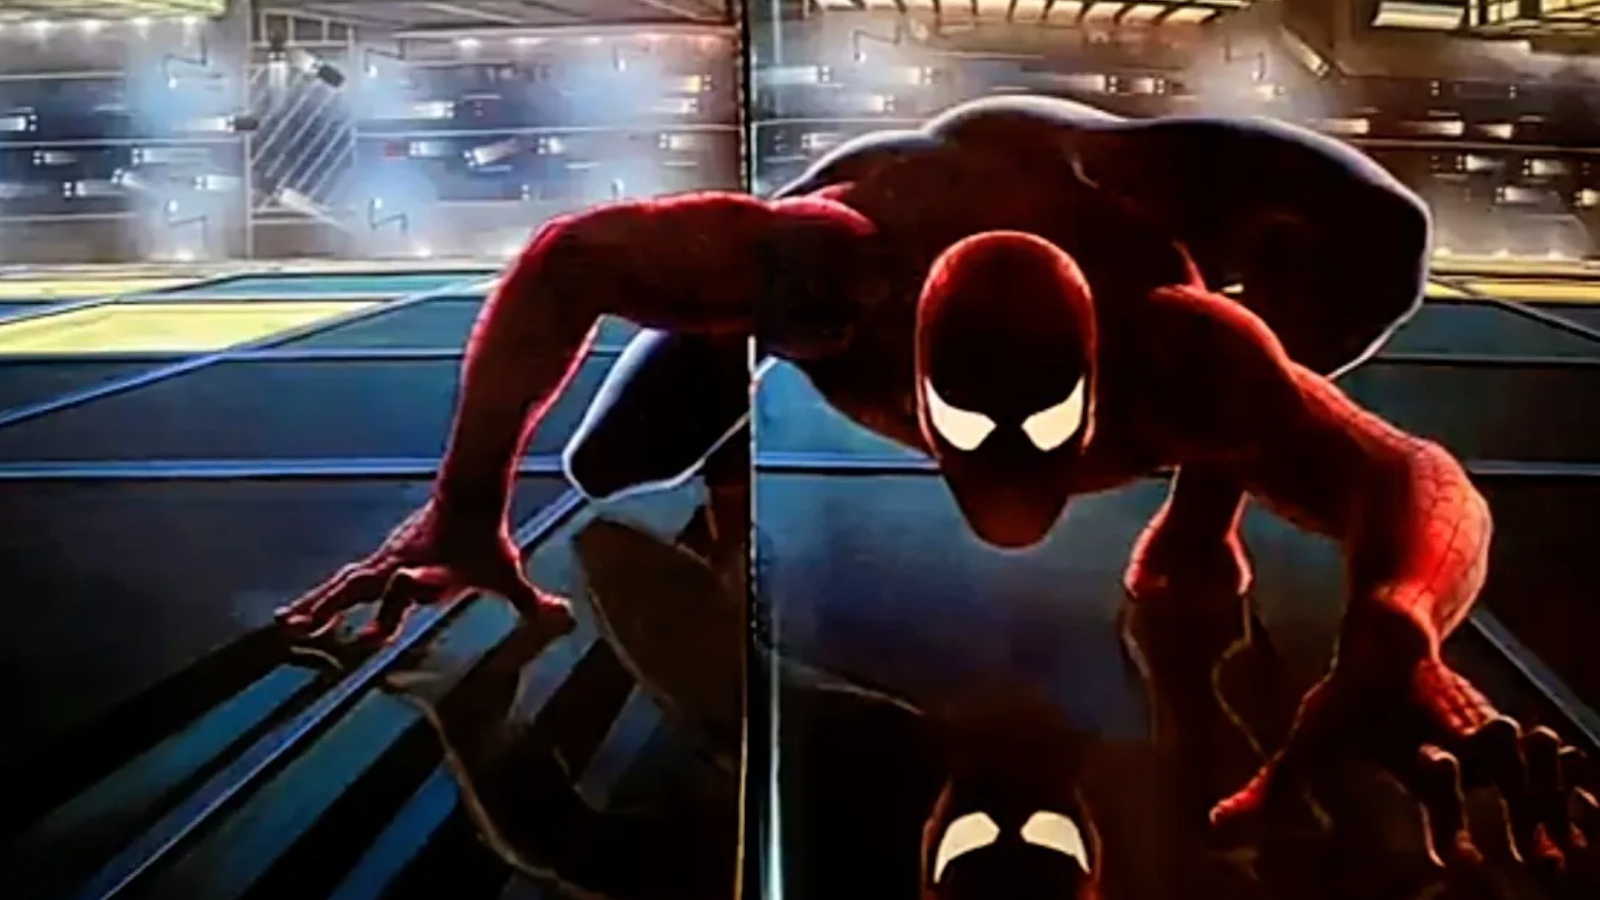 Schizzo di James Cameron per il suo film su Spider-Man